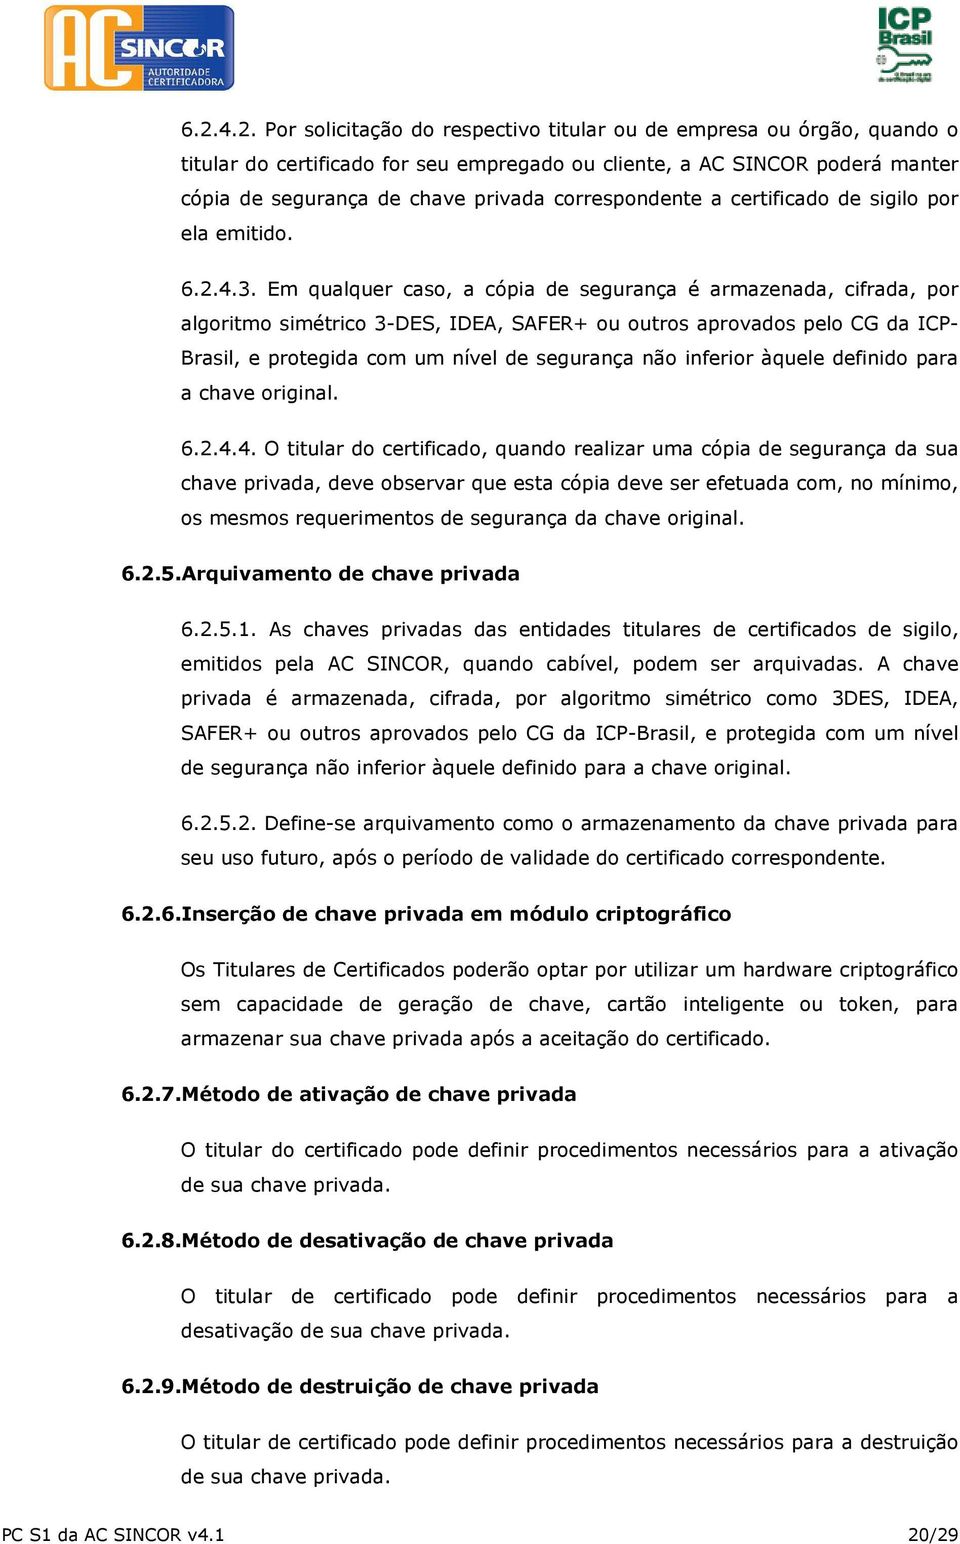 Em qualquer caso, a cópia de segurança é armazenada, cifrada, por algoritmo simétrico 3-DES, IDEA, SAFER+ ou outros aprovados pelo CG da ICP- Brasil, e protegida com um nível de segurança não